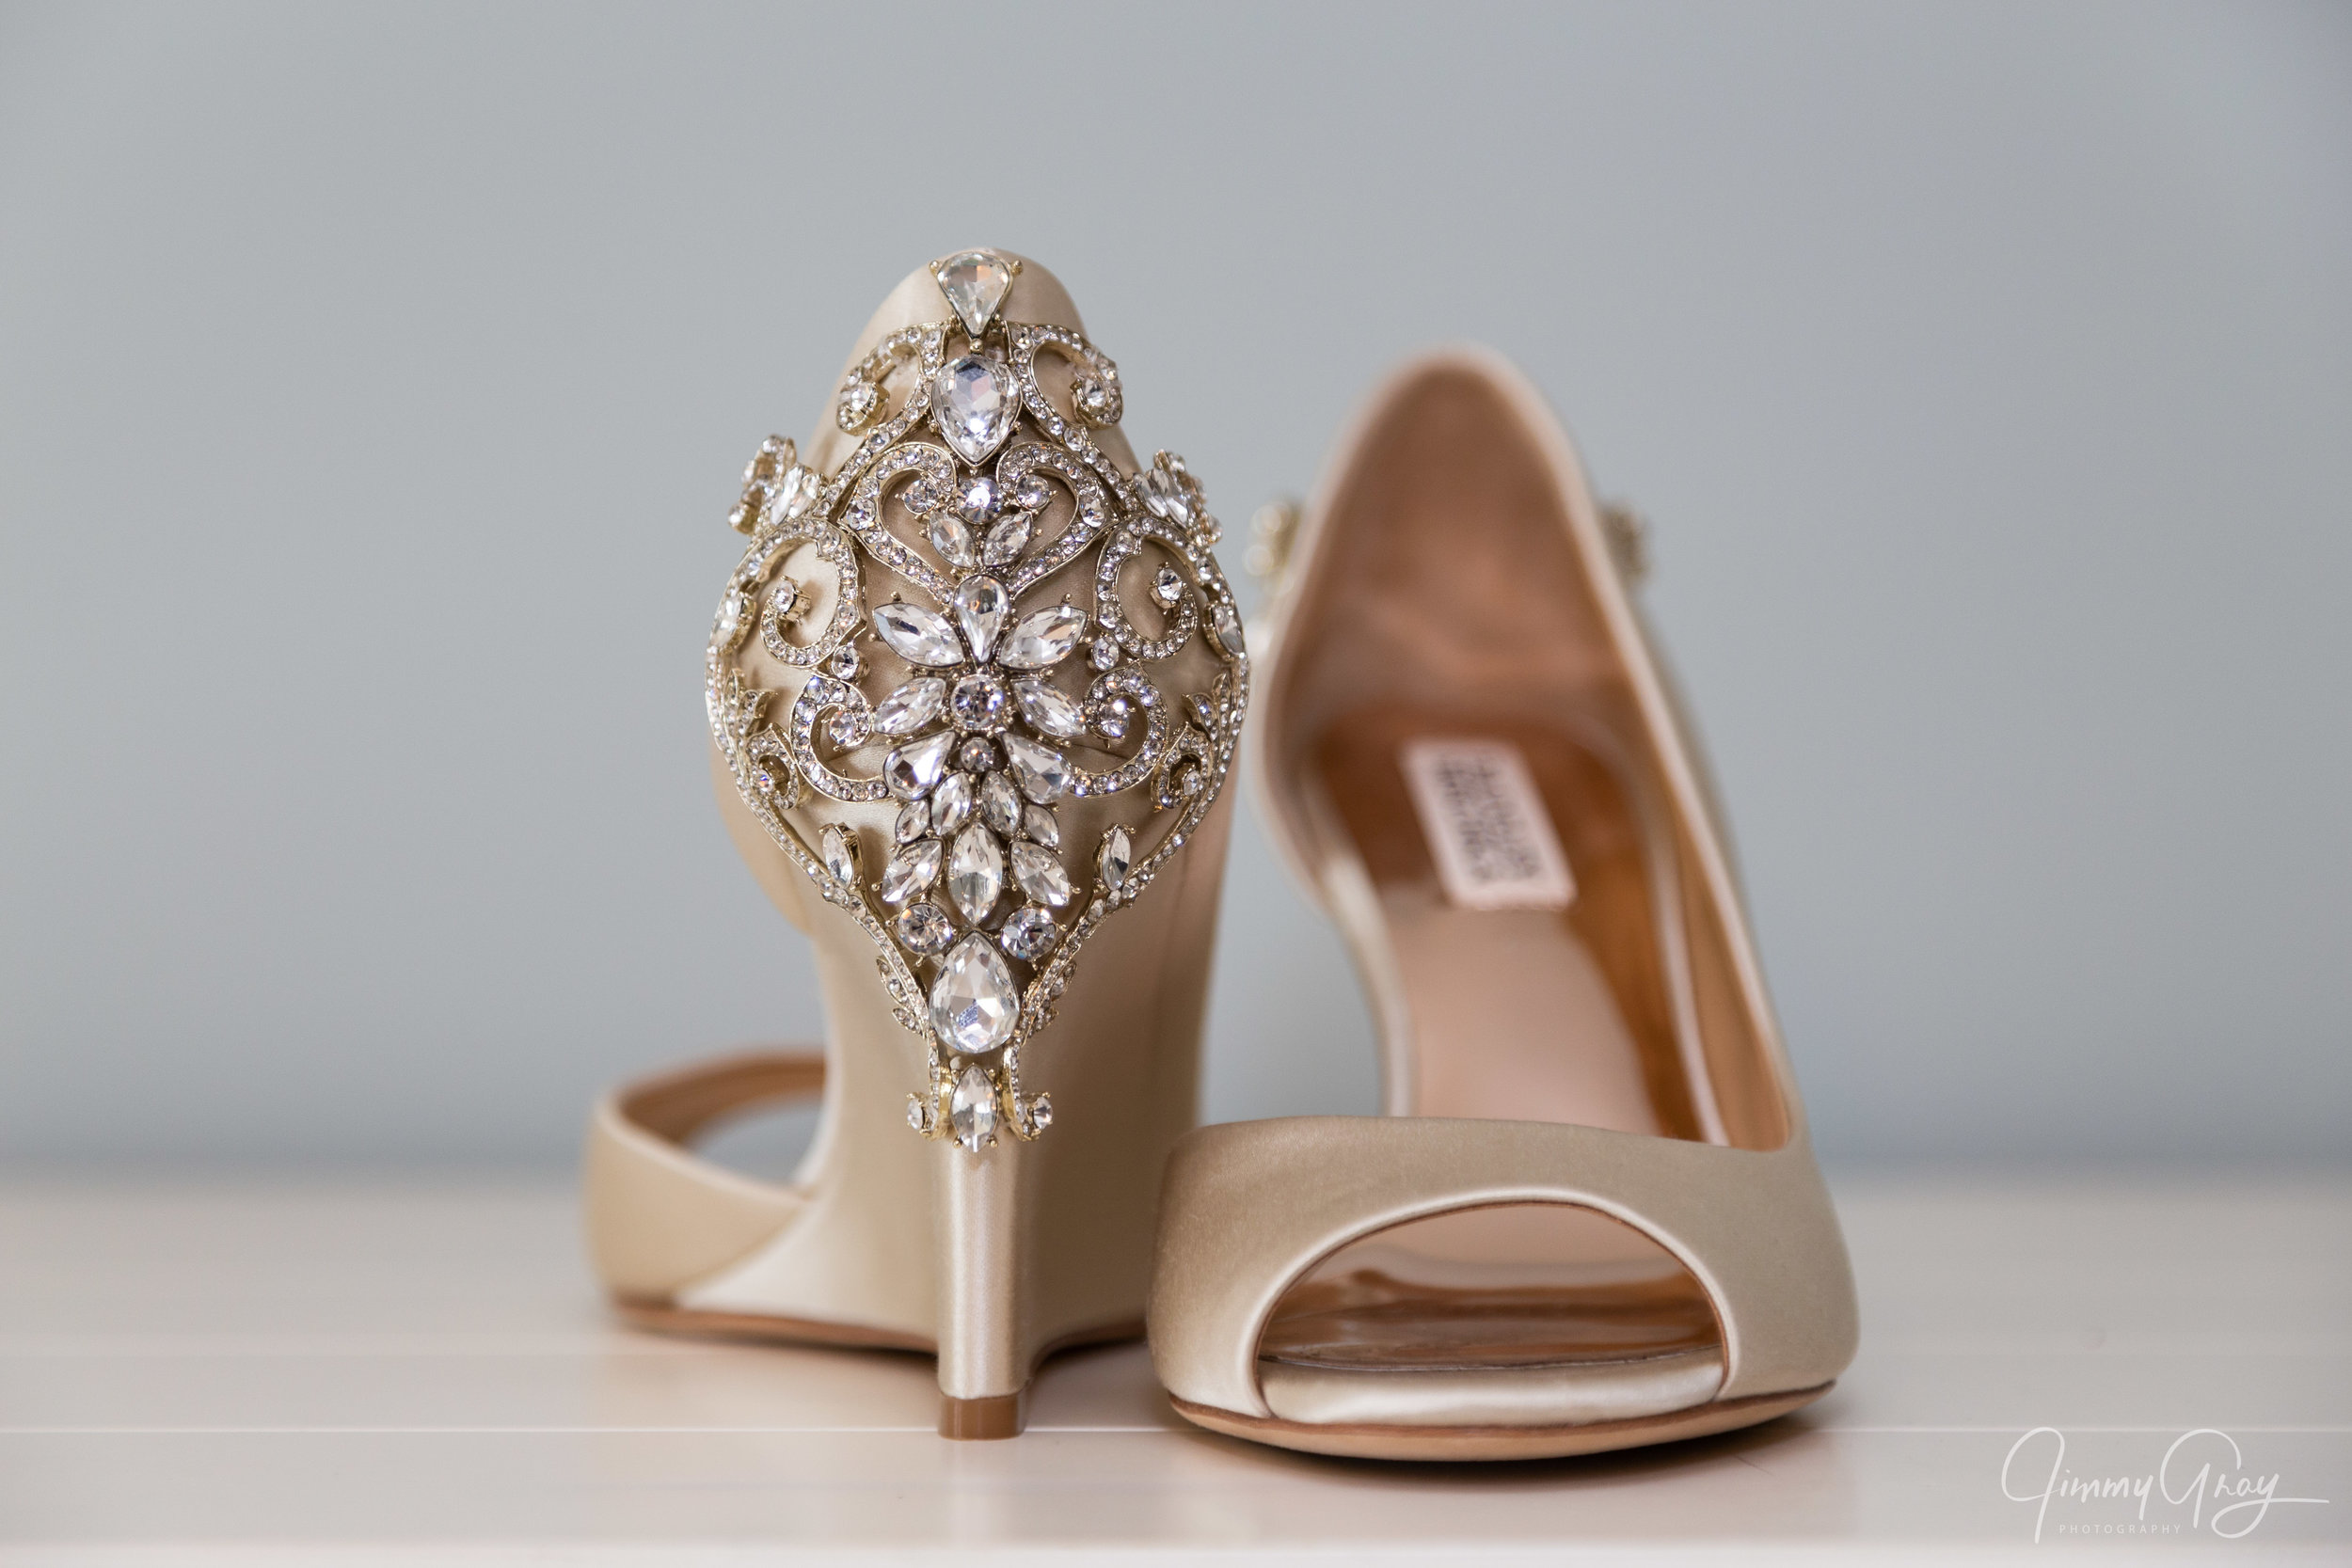 NH Wedding Photography - Jimmy Gray Photo - Laconia, NH - Bridal Shoes Detail Shot - Badgley Mischka